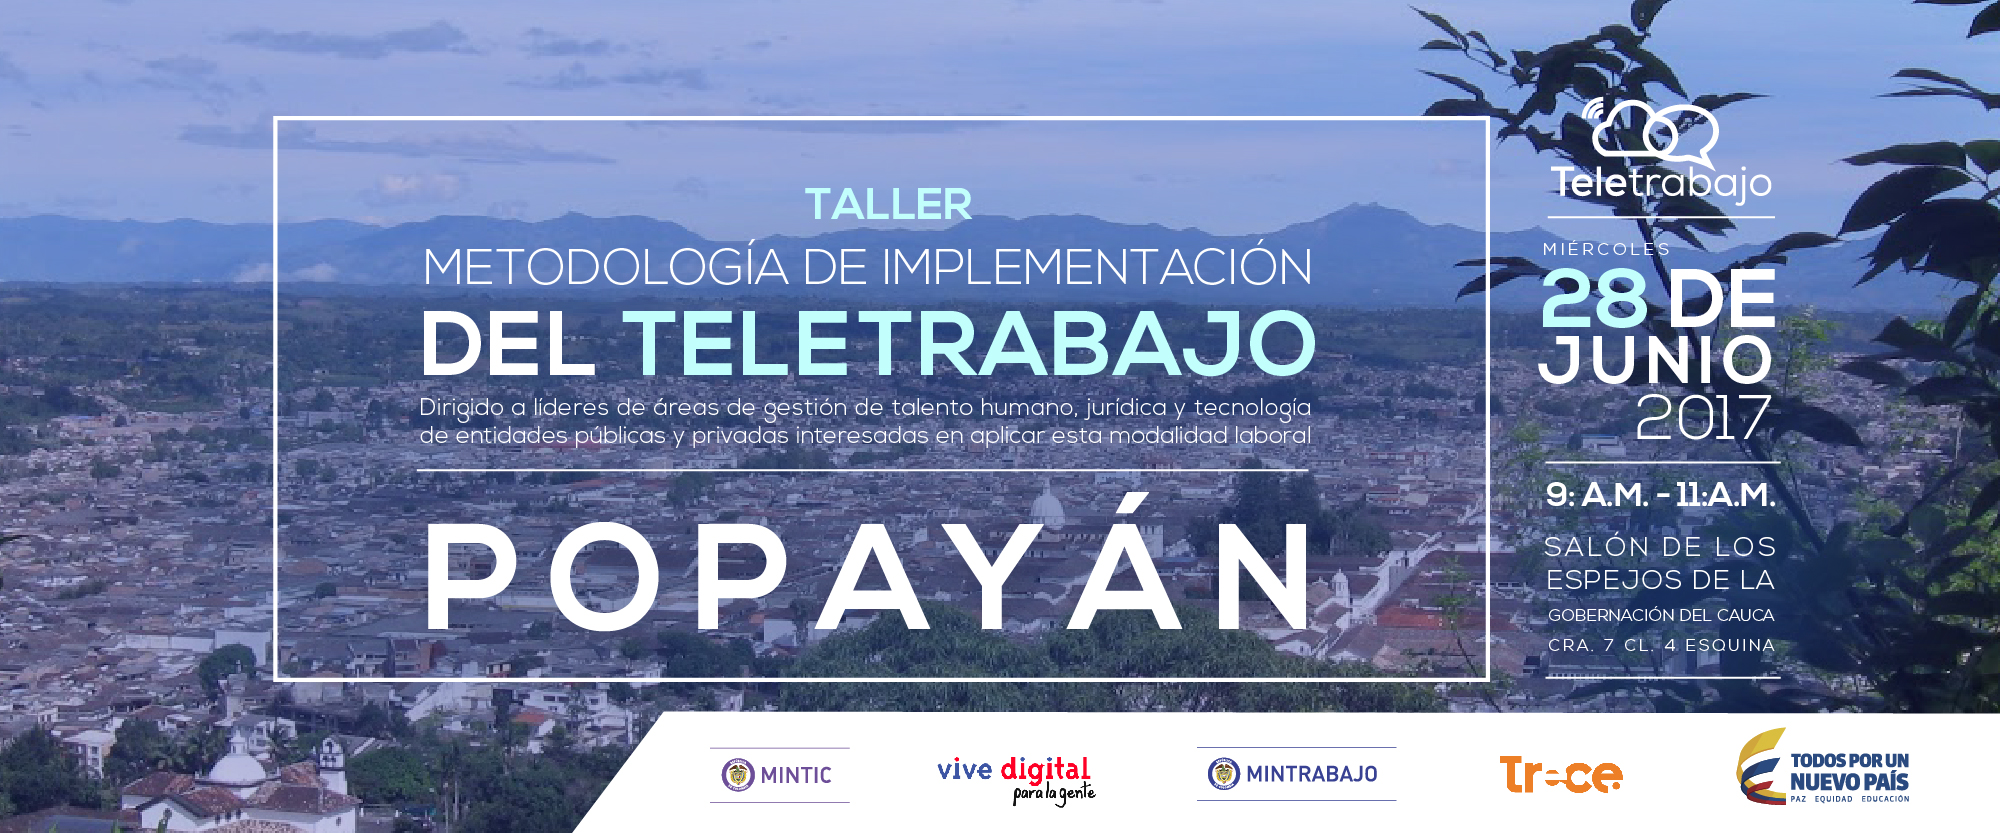 Taller de Teletrabajo gratuito para empresas de Popayán